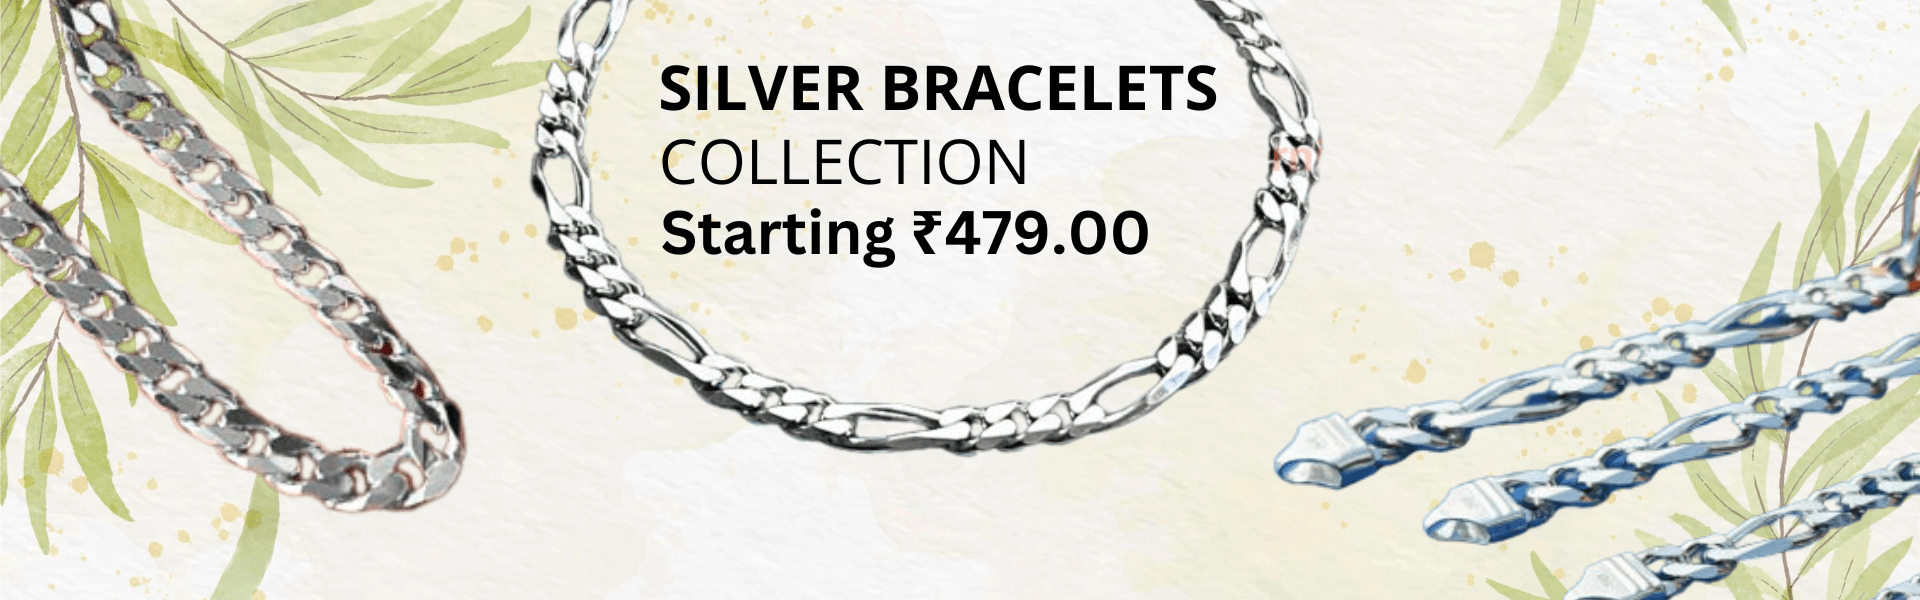 Buy pure silver bracelet online